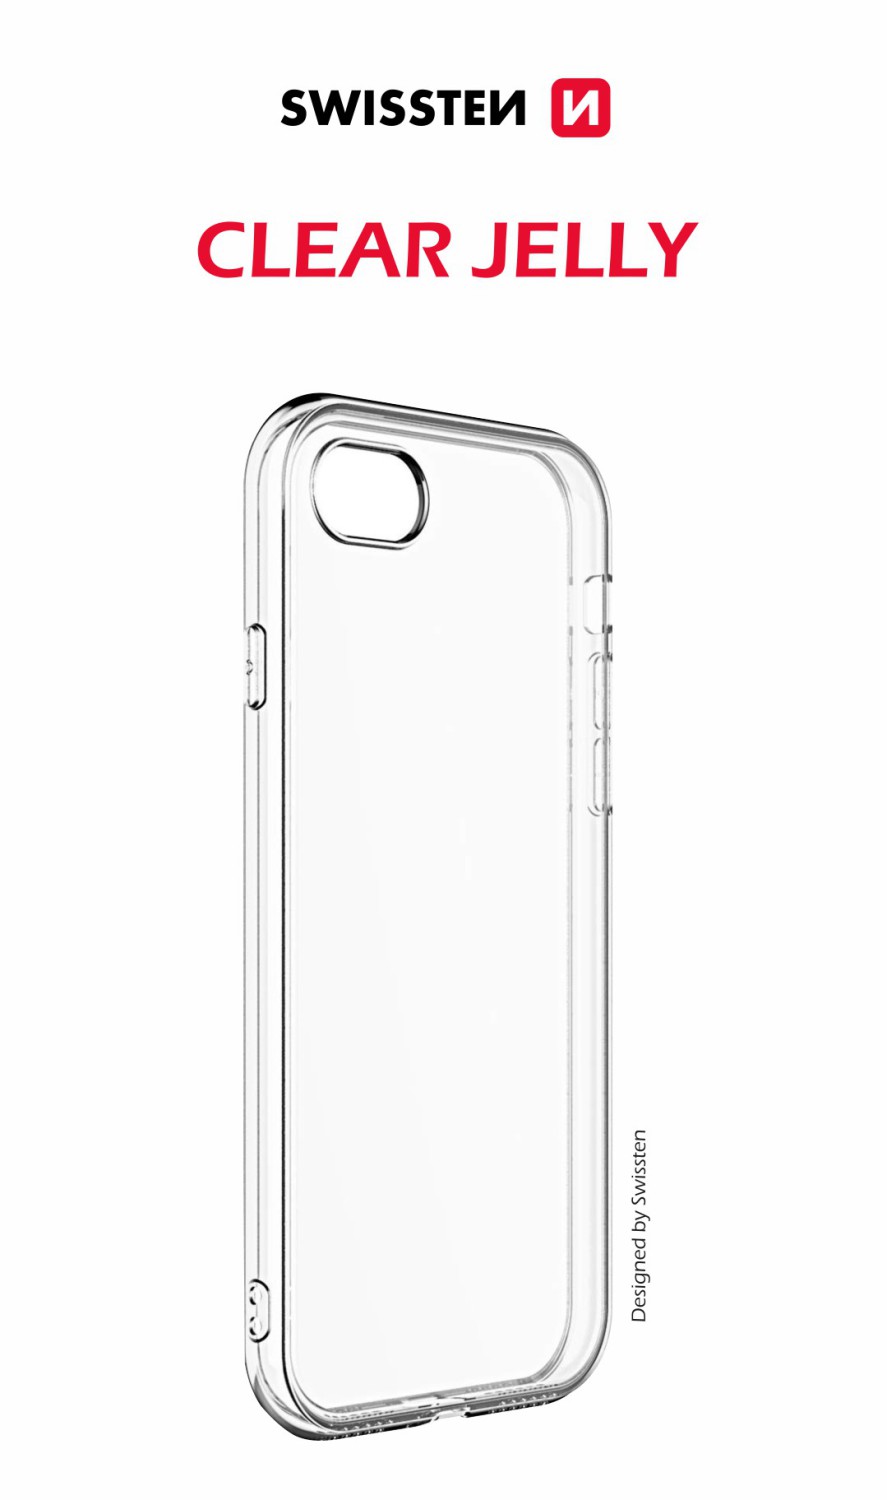 Silikonové pouzdro Swissten Clear Jelly pro Samsung Galaxy S21 FE 5G, transparentní 